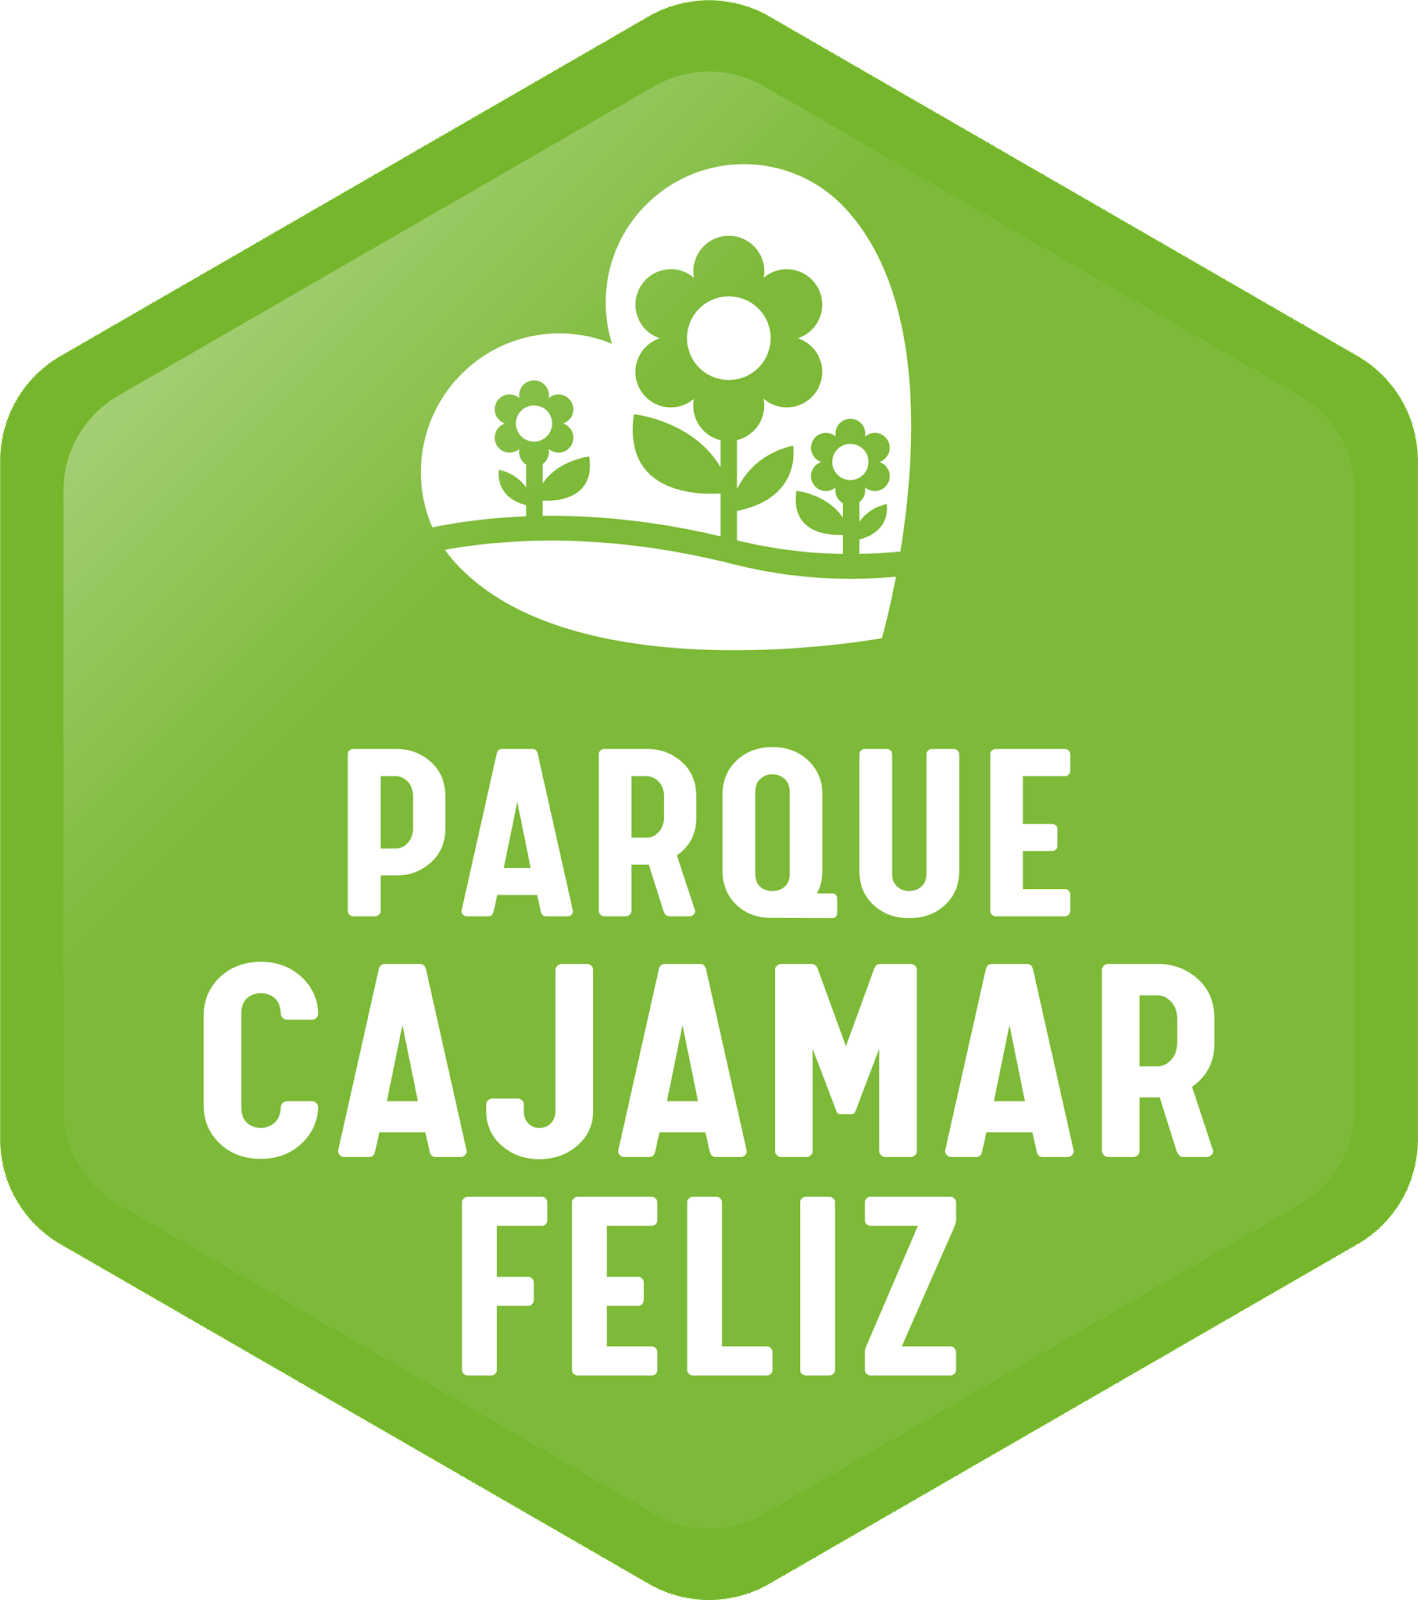 Parque Cajamar Feliz